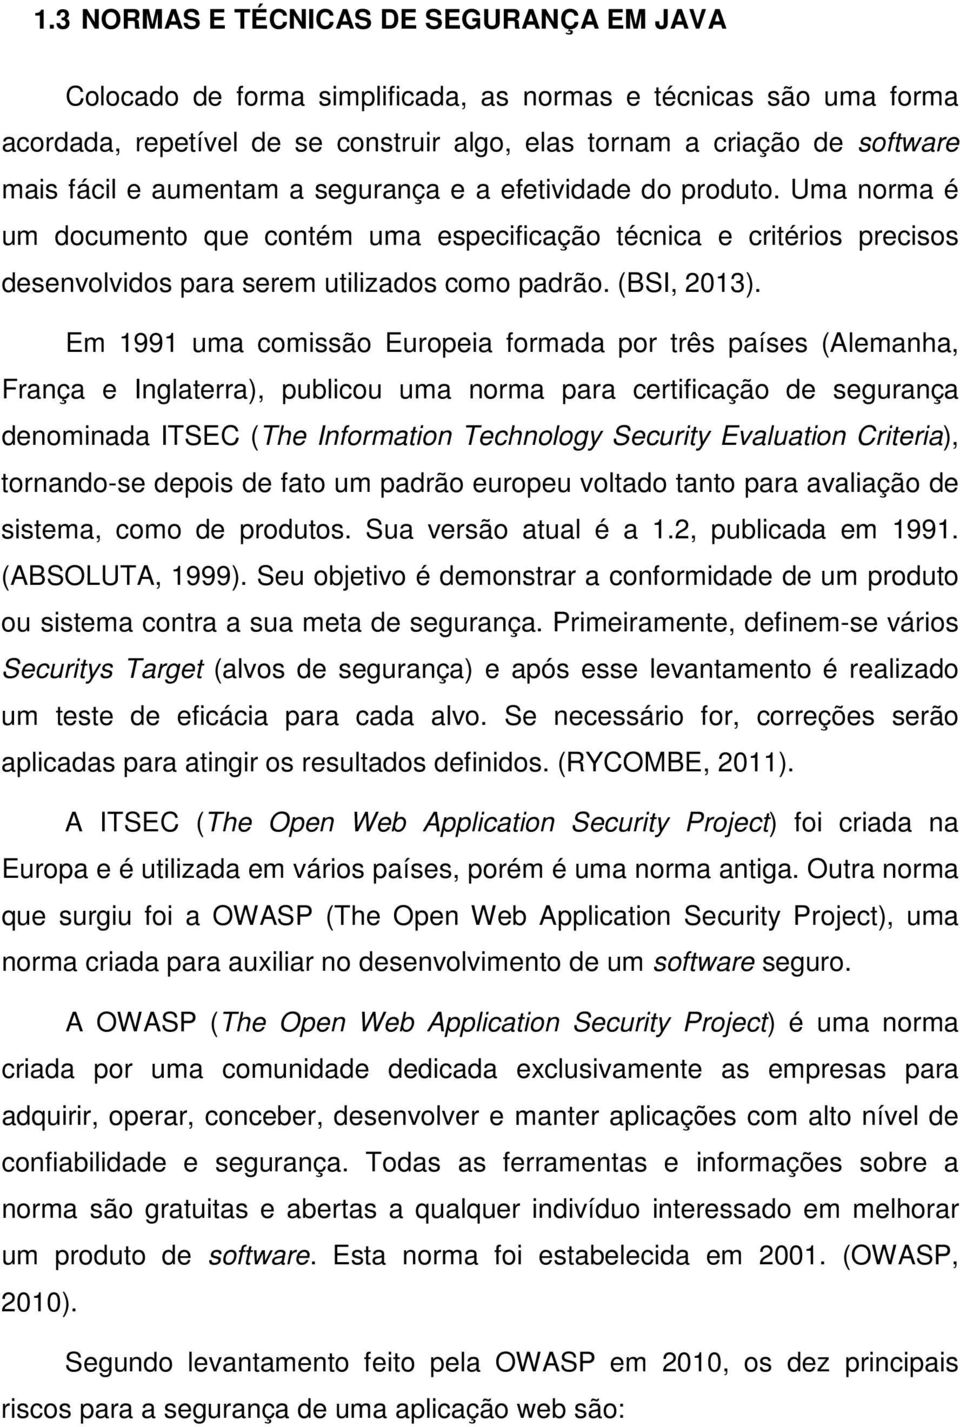 Em 1991 uma comissão Europeia formada por três países (Alemanha, França e Inglaterra), publicou uma norma para certificação de segurança denominada ITSEC (The Information Technology Security